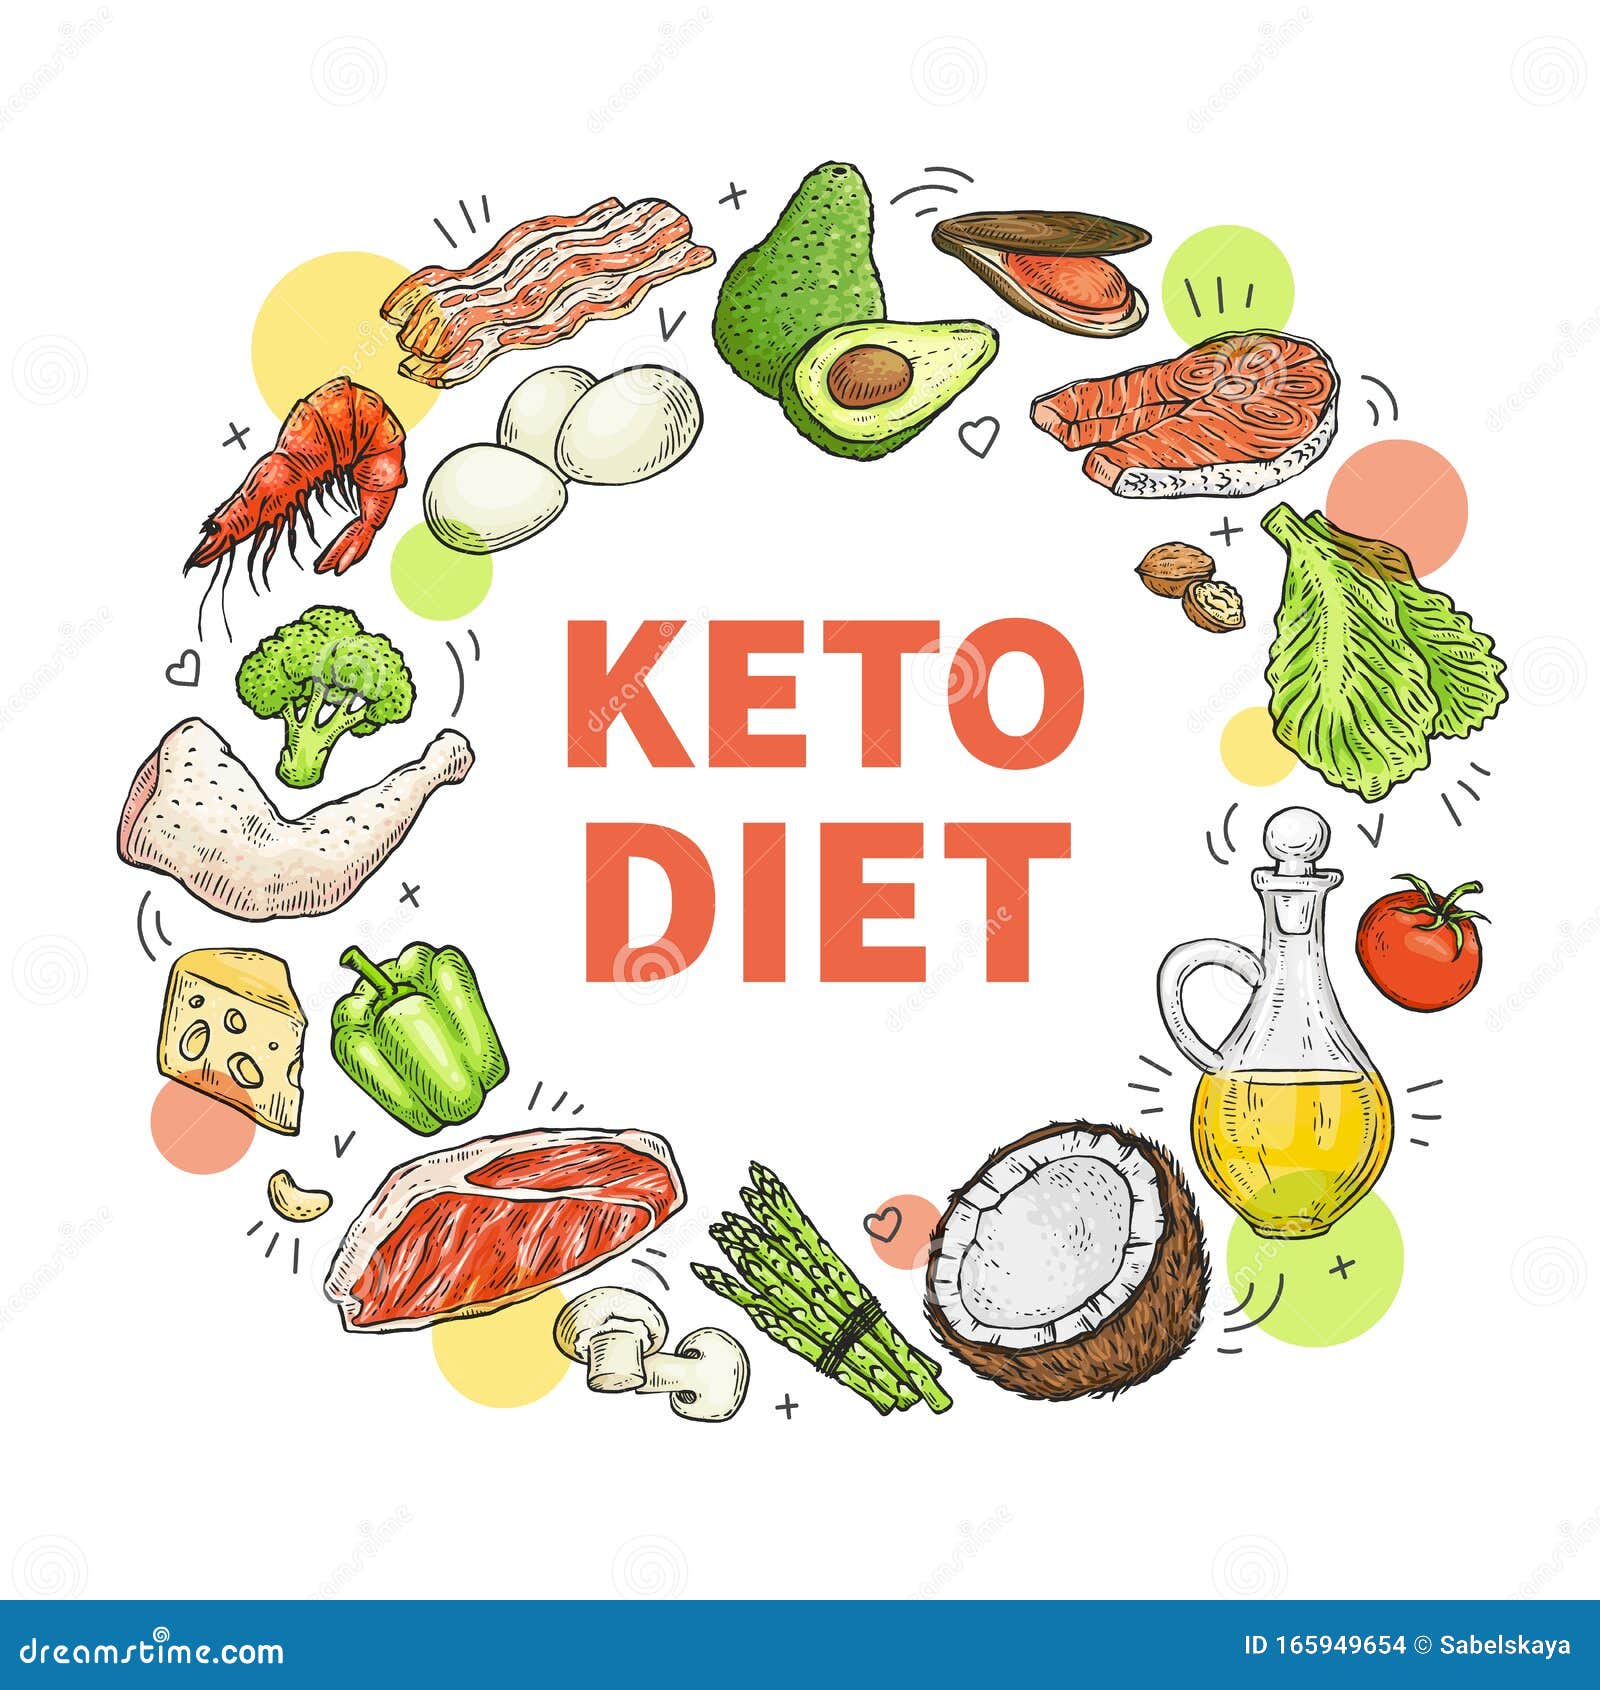 Cele mai bune suplimente dieta keto – ce este dieta keto, rețete keto, rezultate